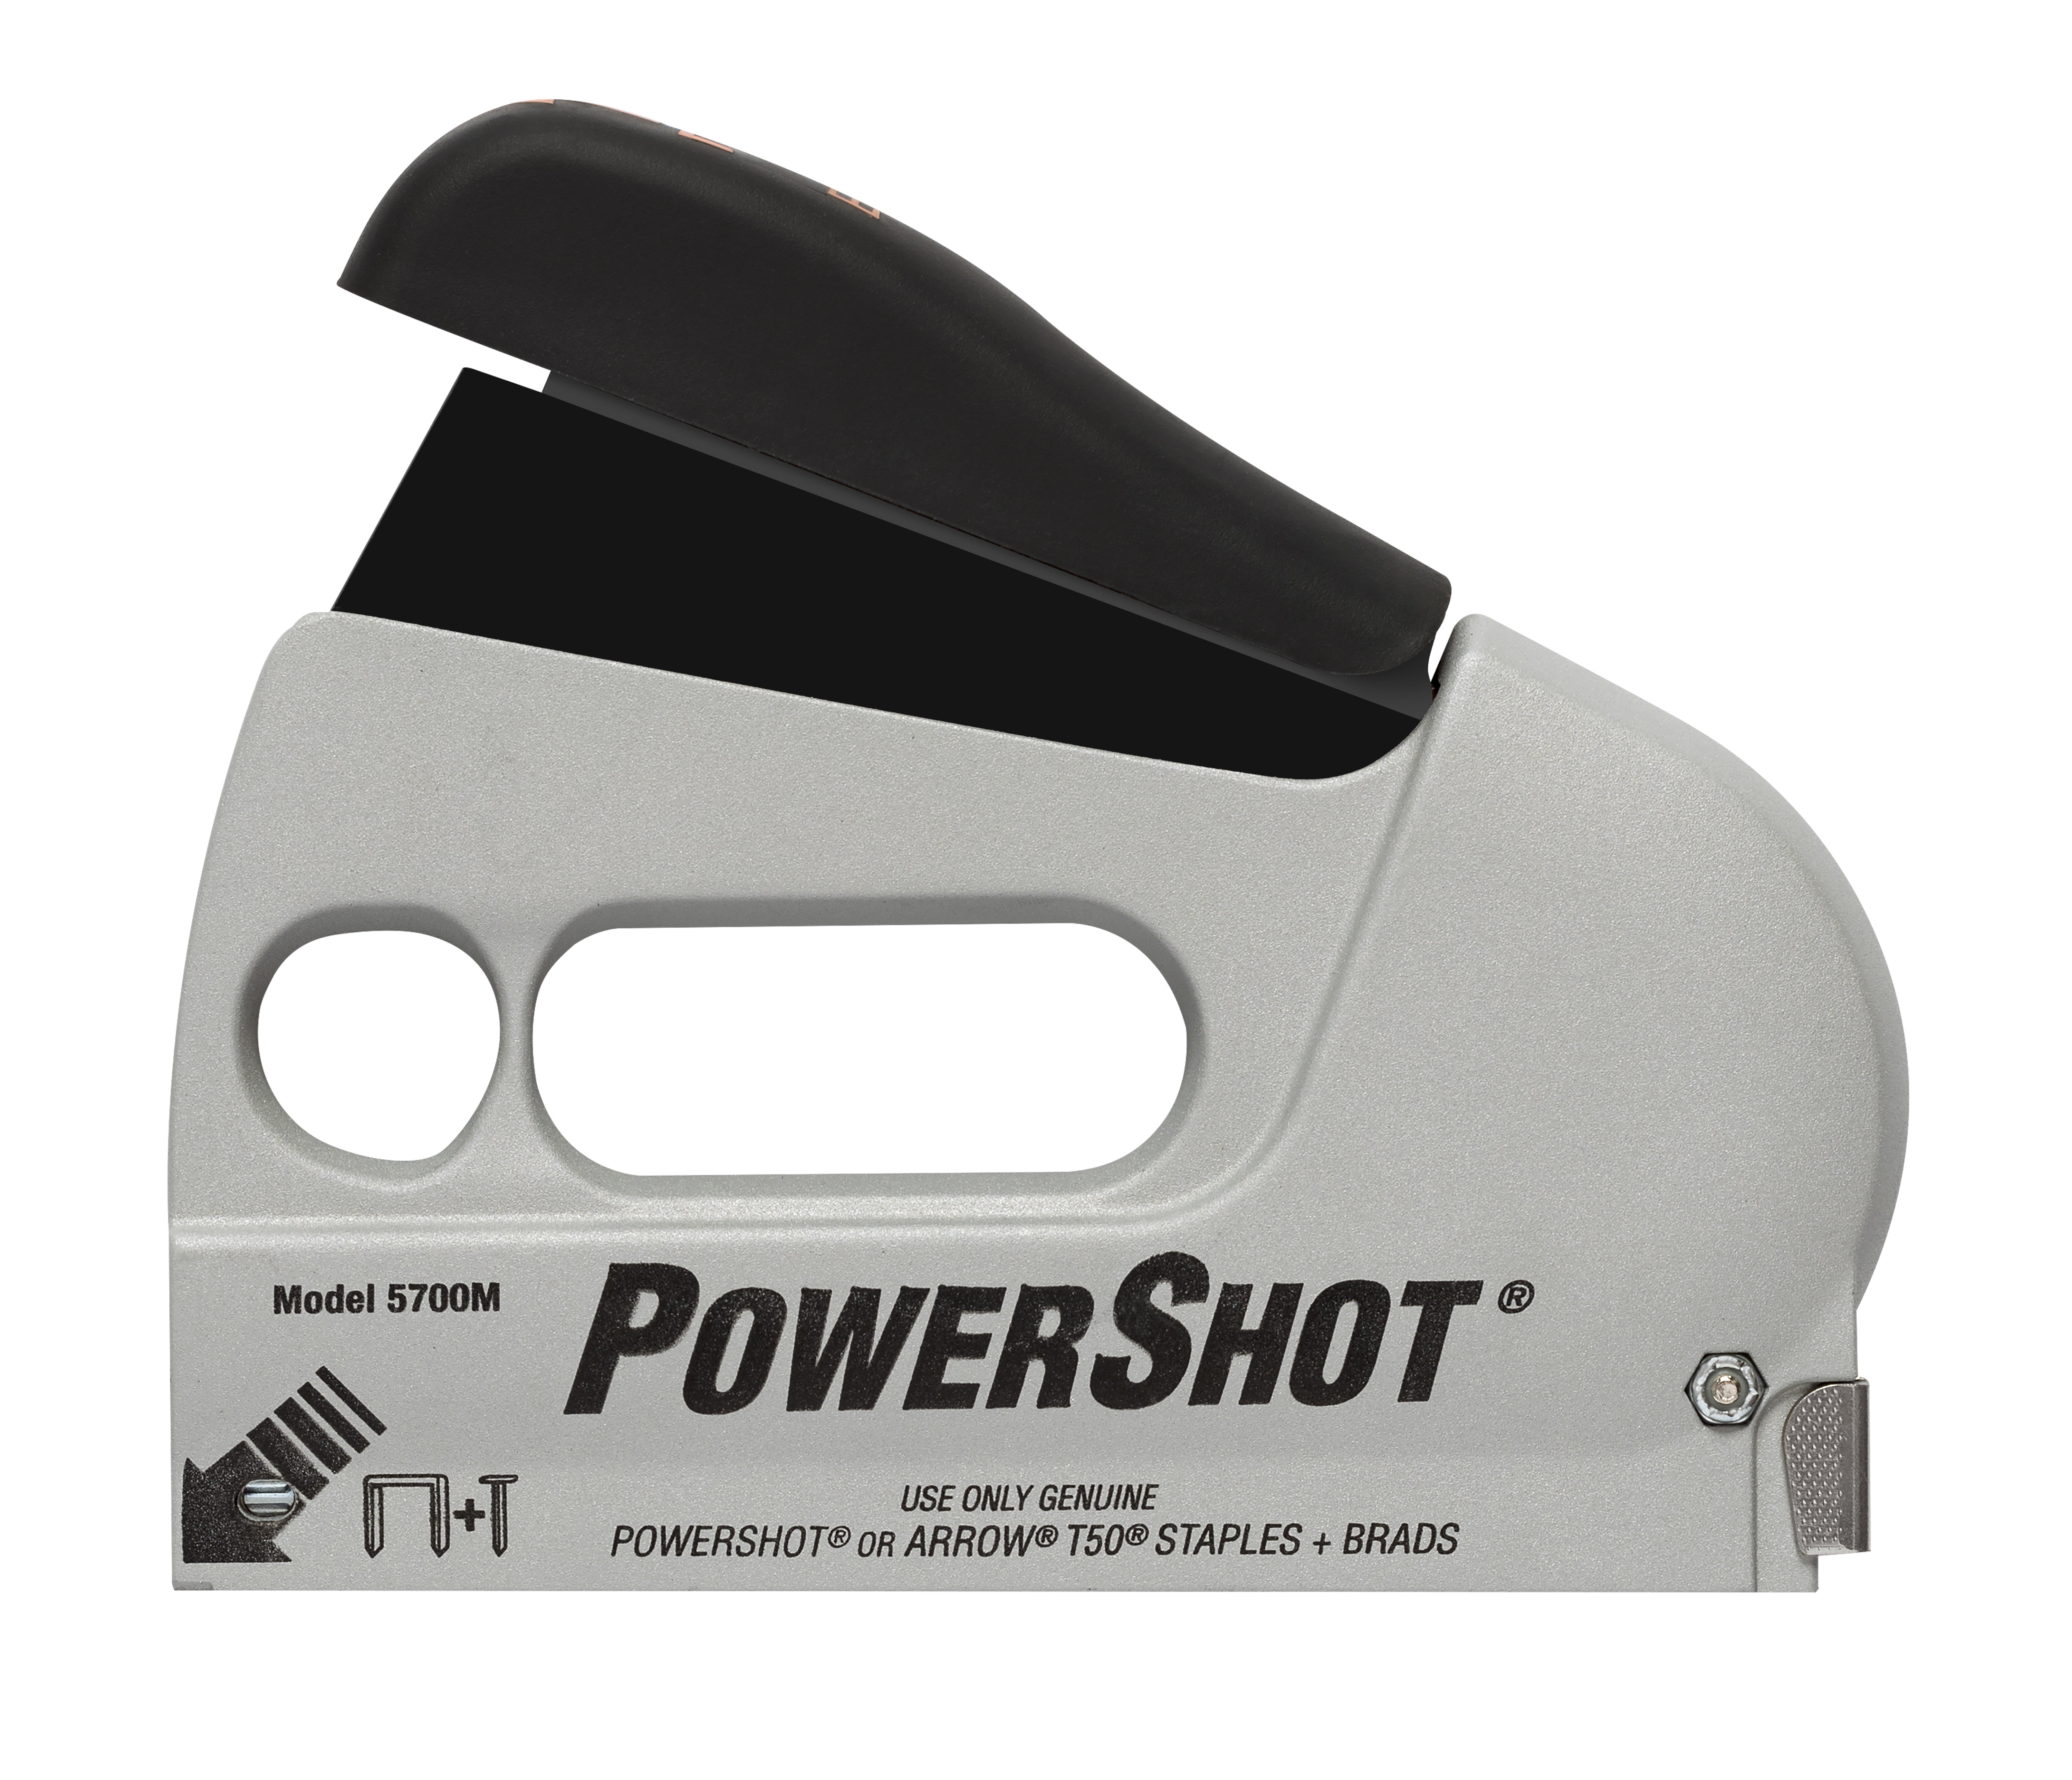 Powershot 5700 Staple Gun - Forward Action Stapler